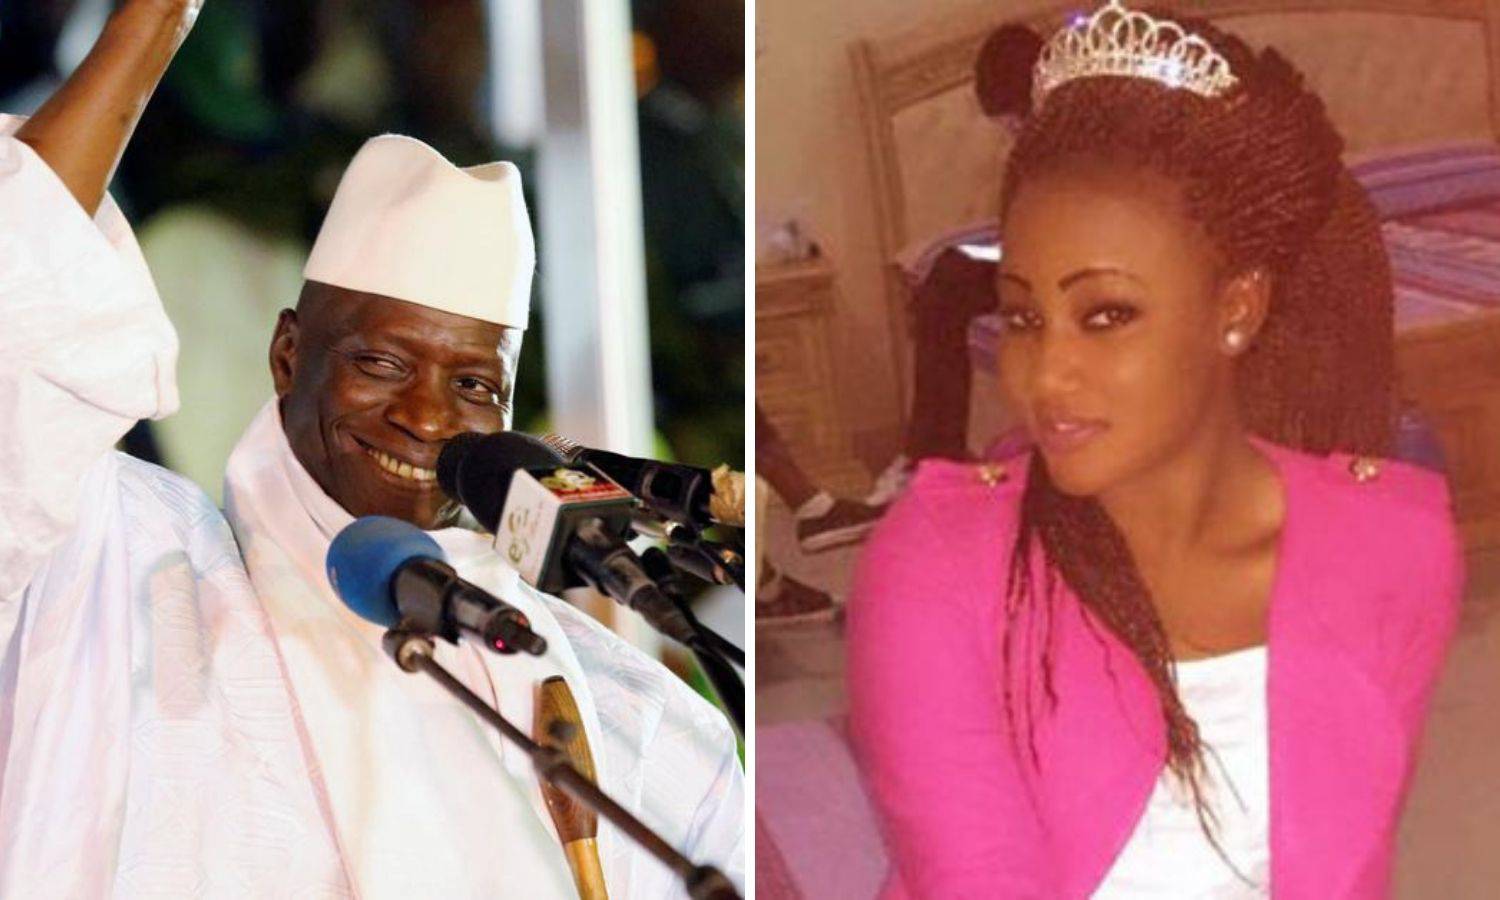 Missica je za silovanje optužila bivšeg gambijskog predsjednika